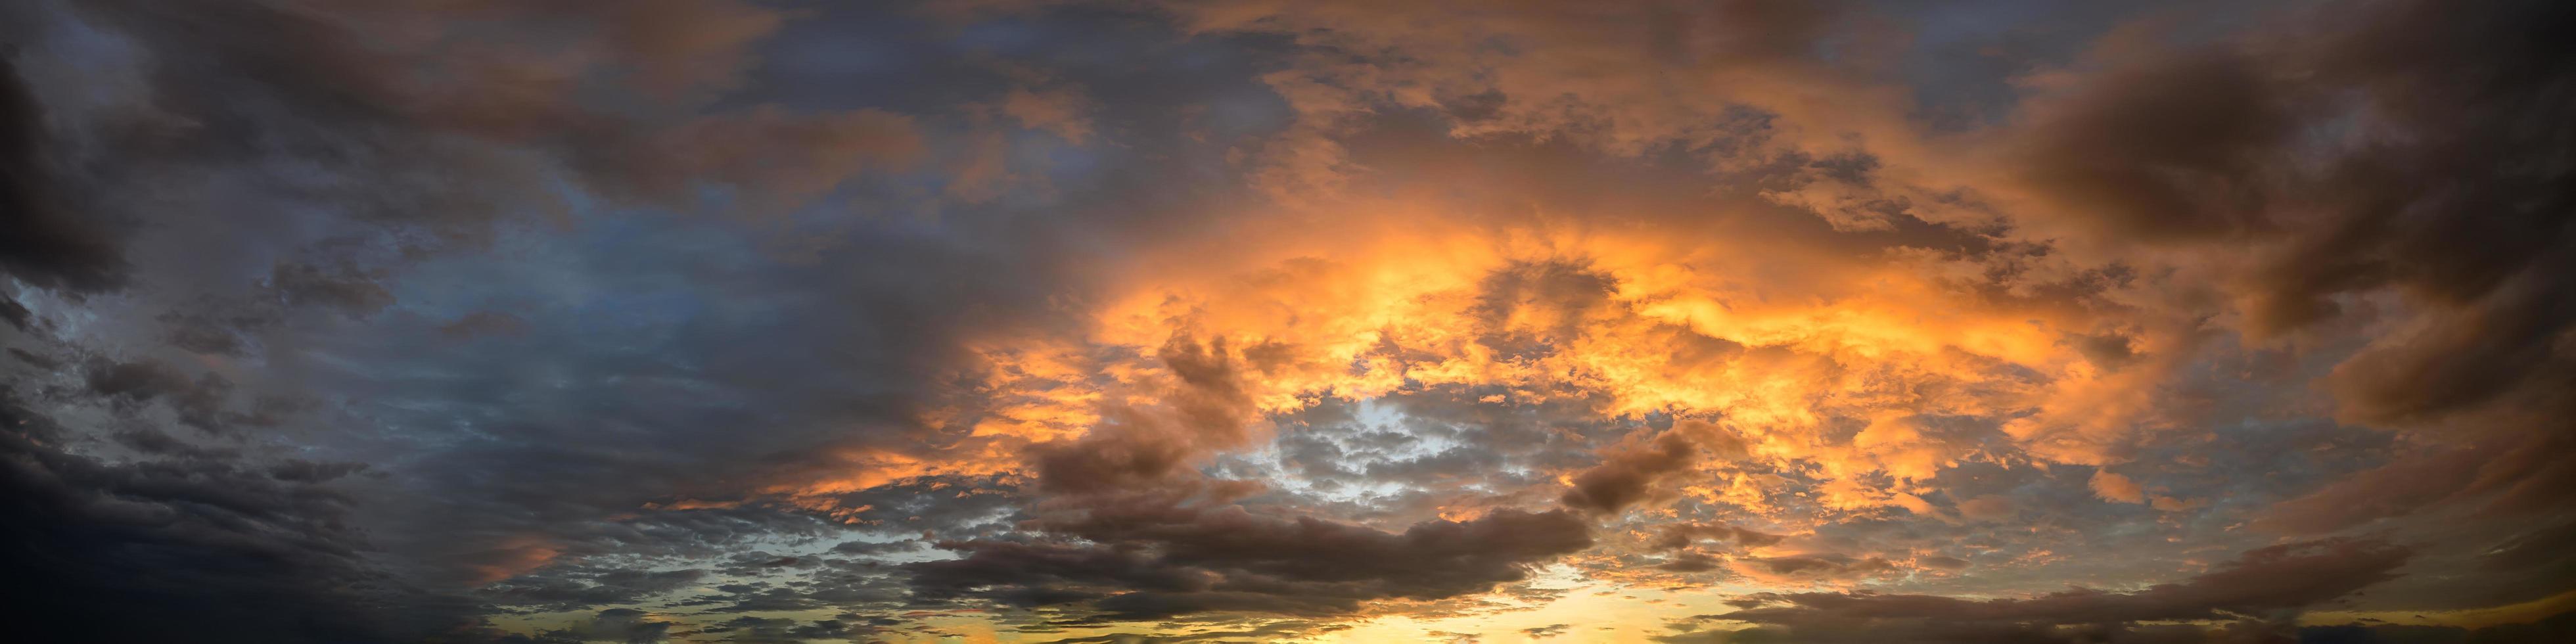 Himmel und Wolken bei Sonnenuntergang foto